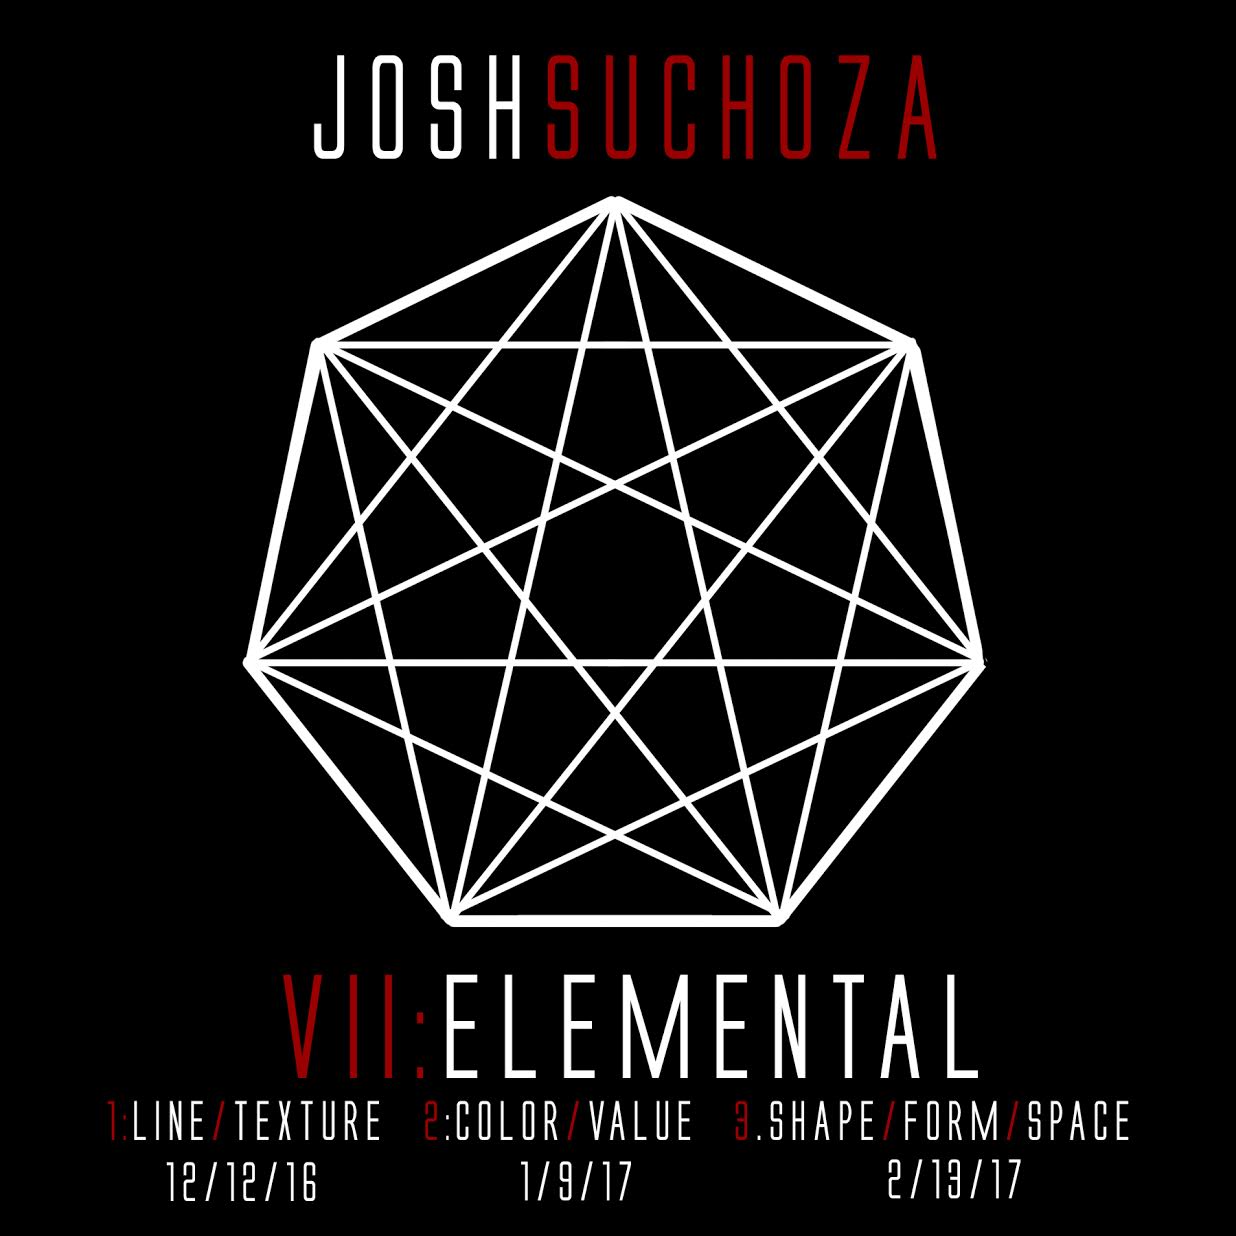 VII: Elemental 3:Shape/Form/Space